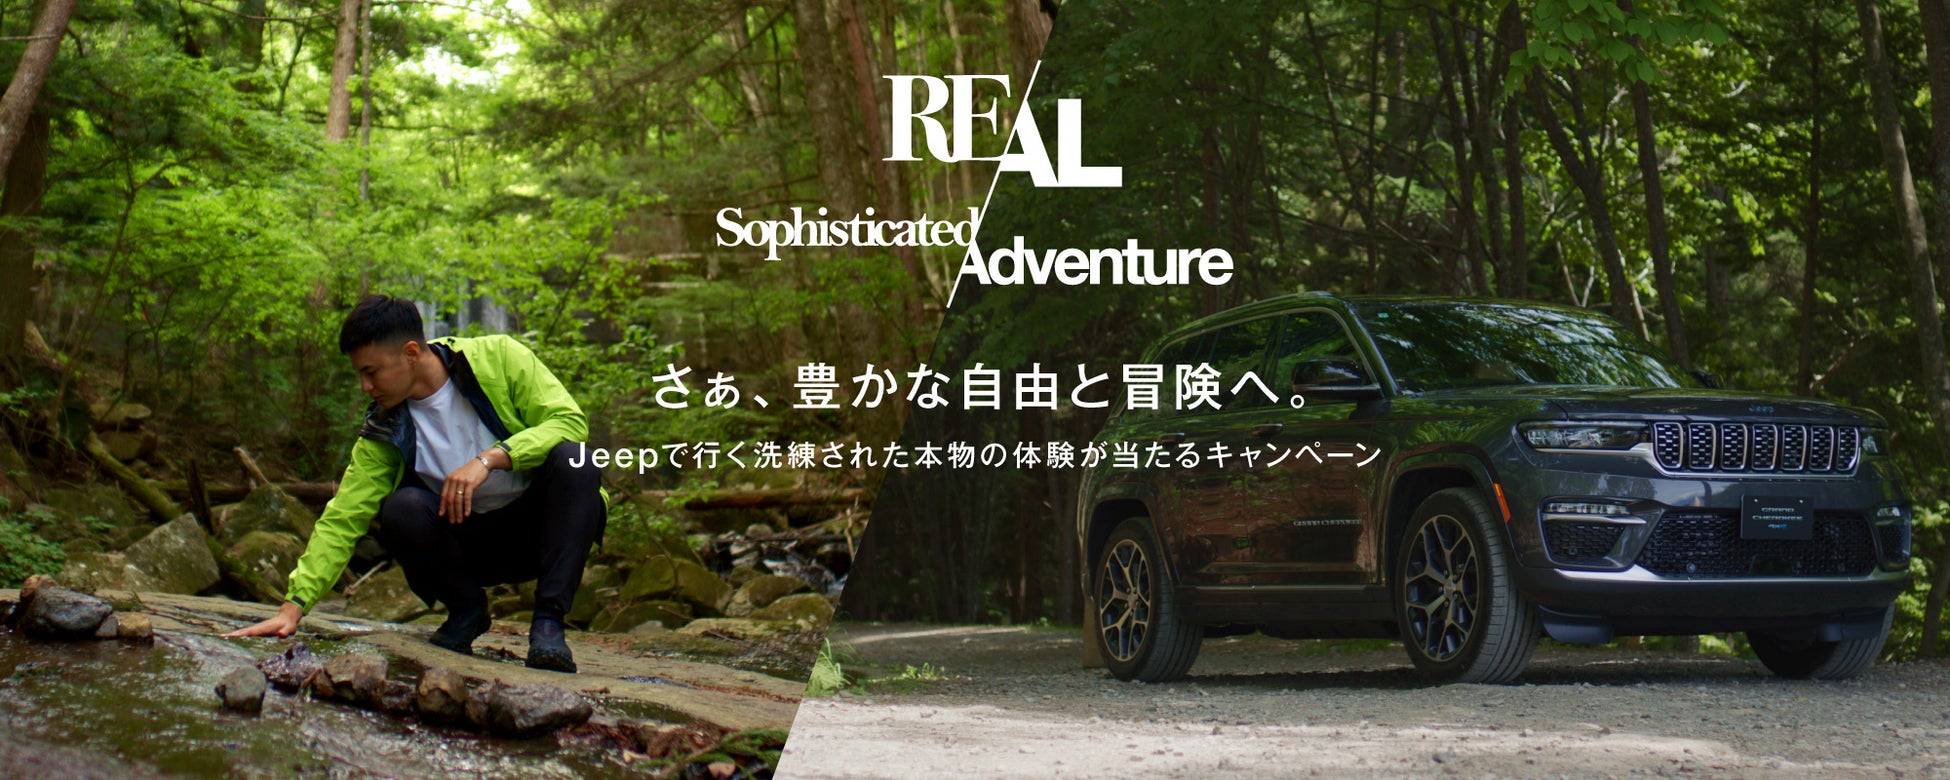 さぁ、豊かな自由と冒険へ。Jeepで行く洗練された本物の体験が当たるキャンペーン「Real Sophisticated Adventure」を開催のサブ画像1